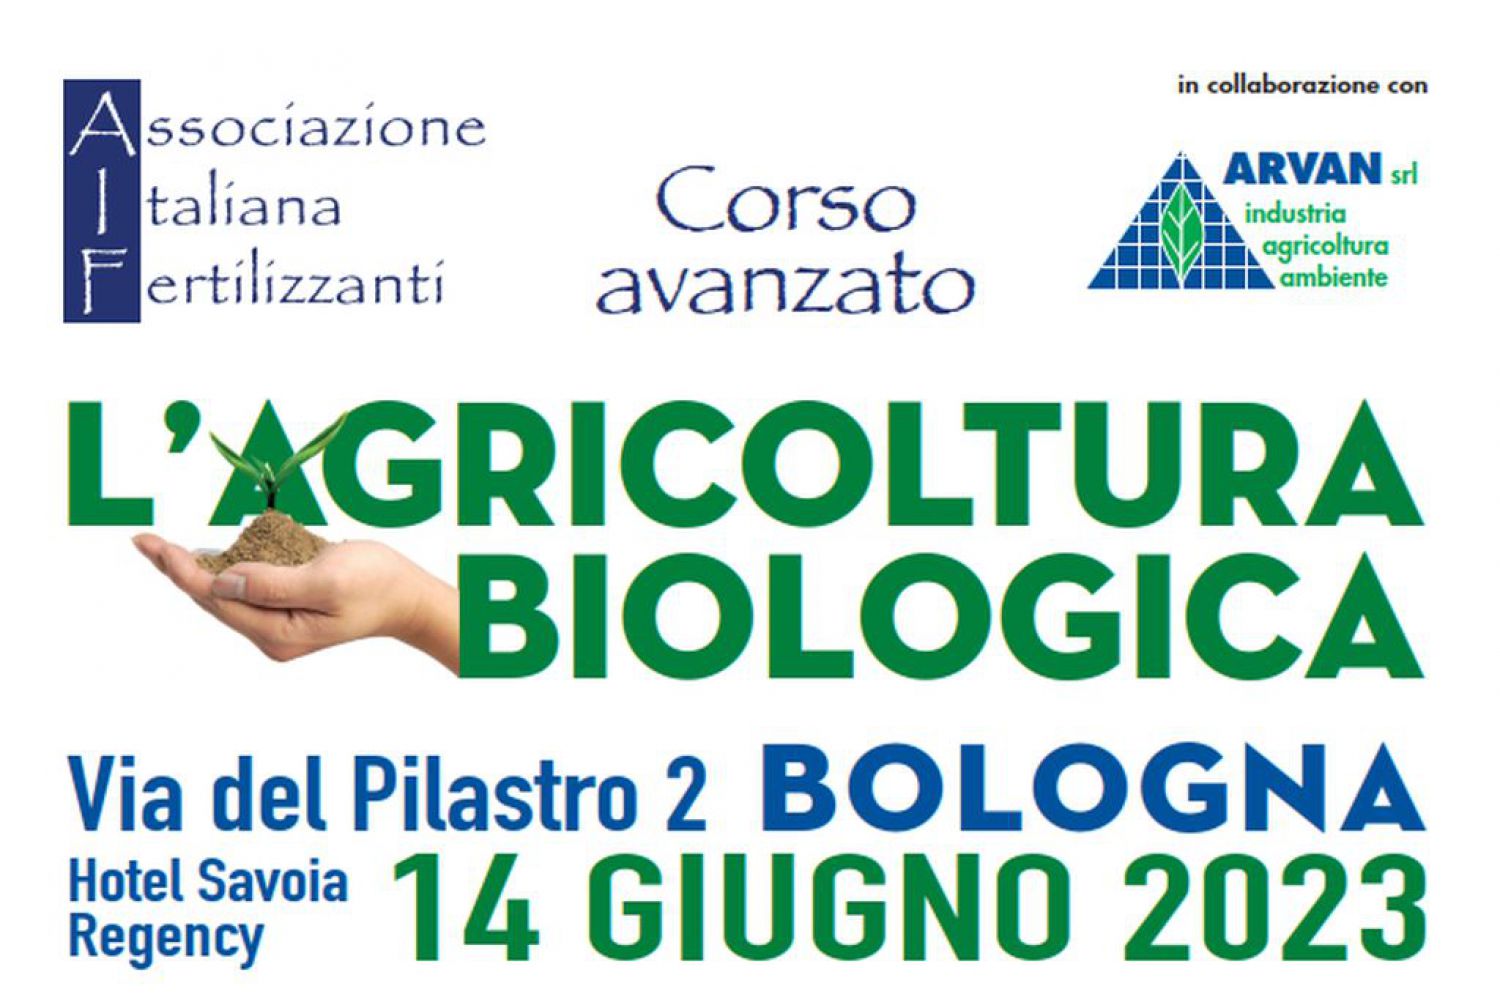 Corso avanzato: Agricoltura biologica